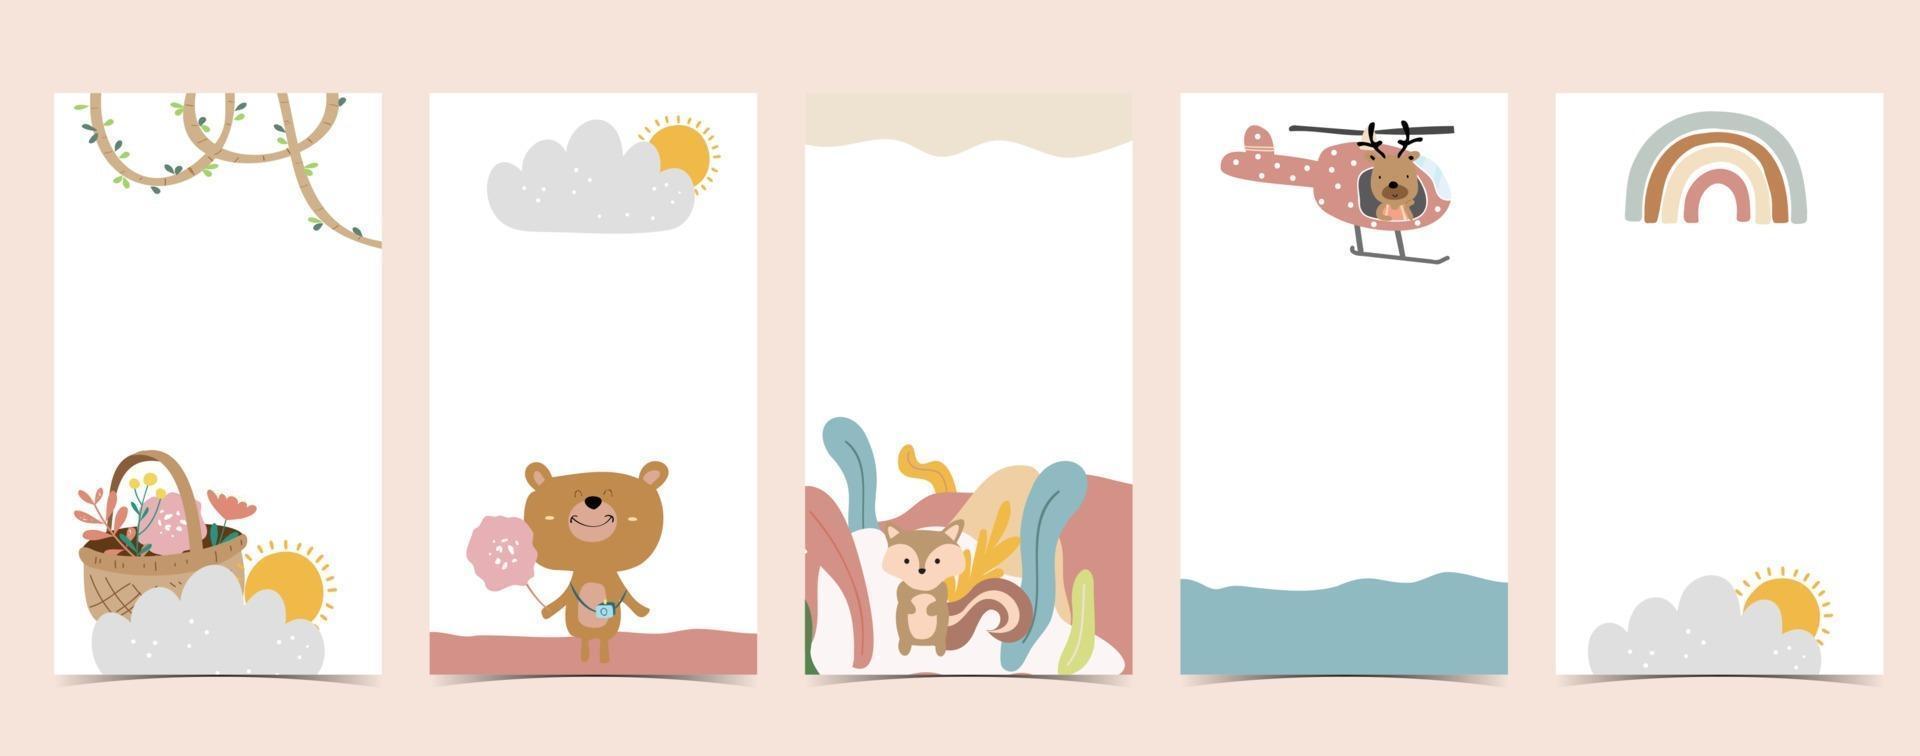 fond mignon pour social media.set d'histoire avec arc-en-ciel, ours, arbre vecteur